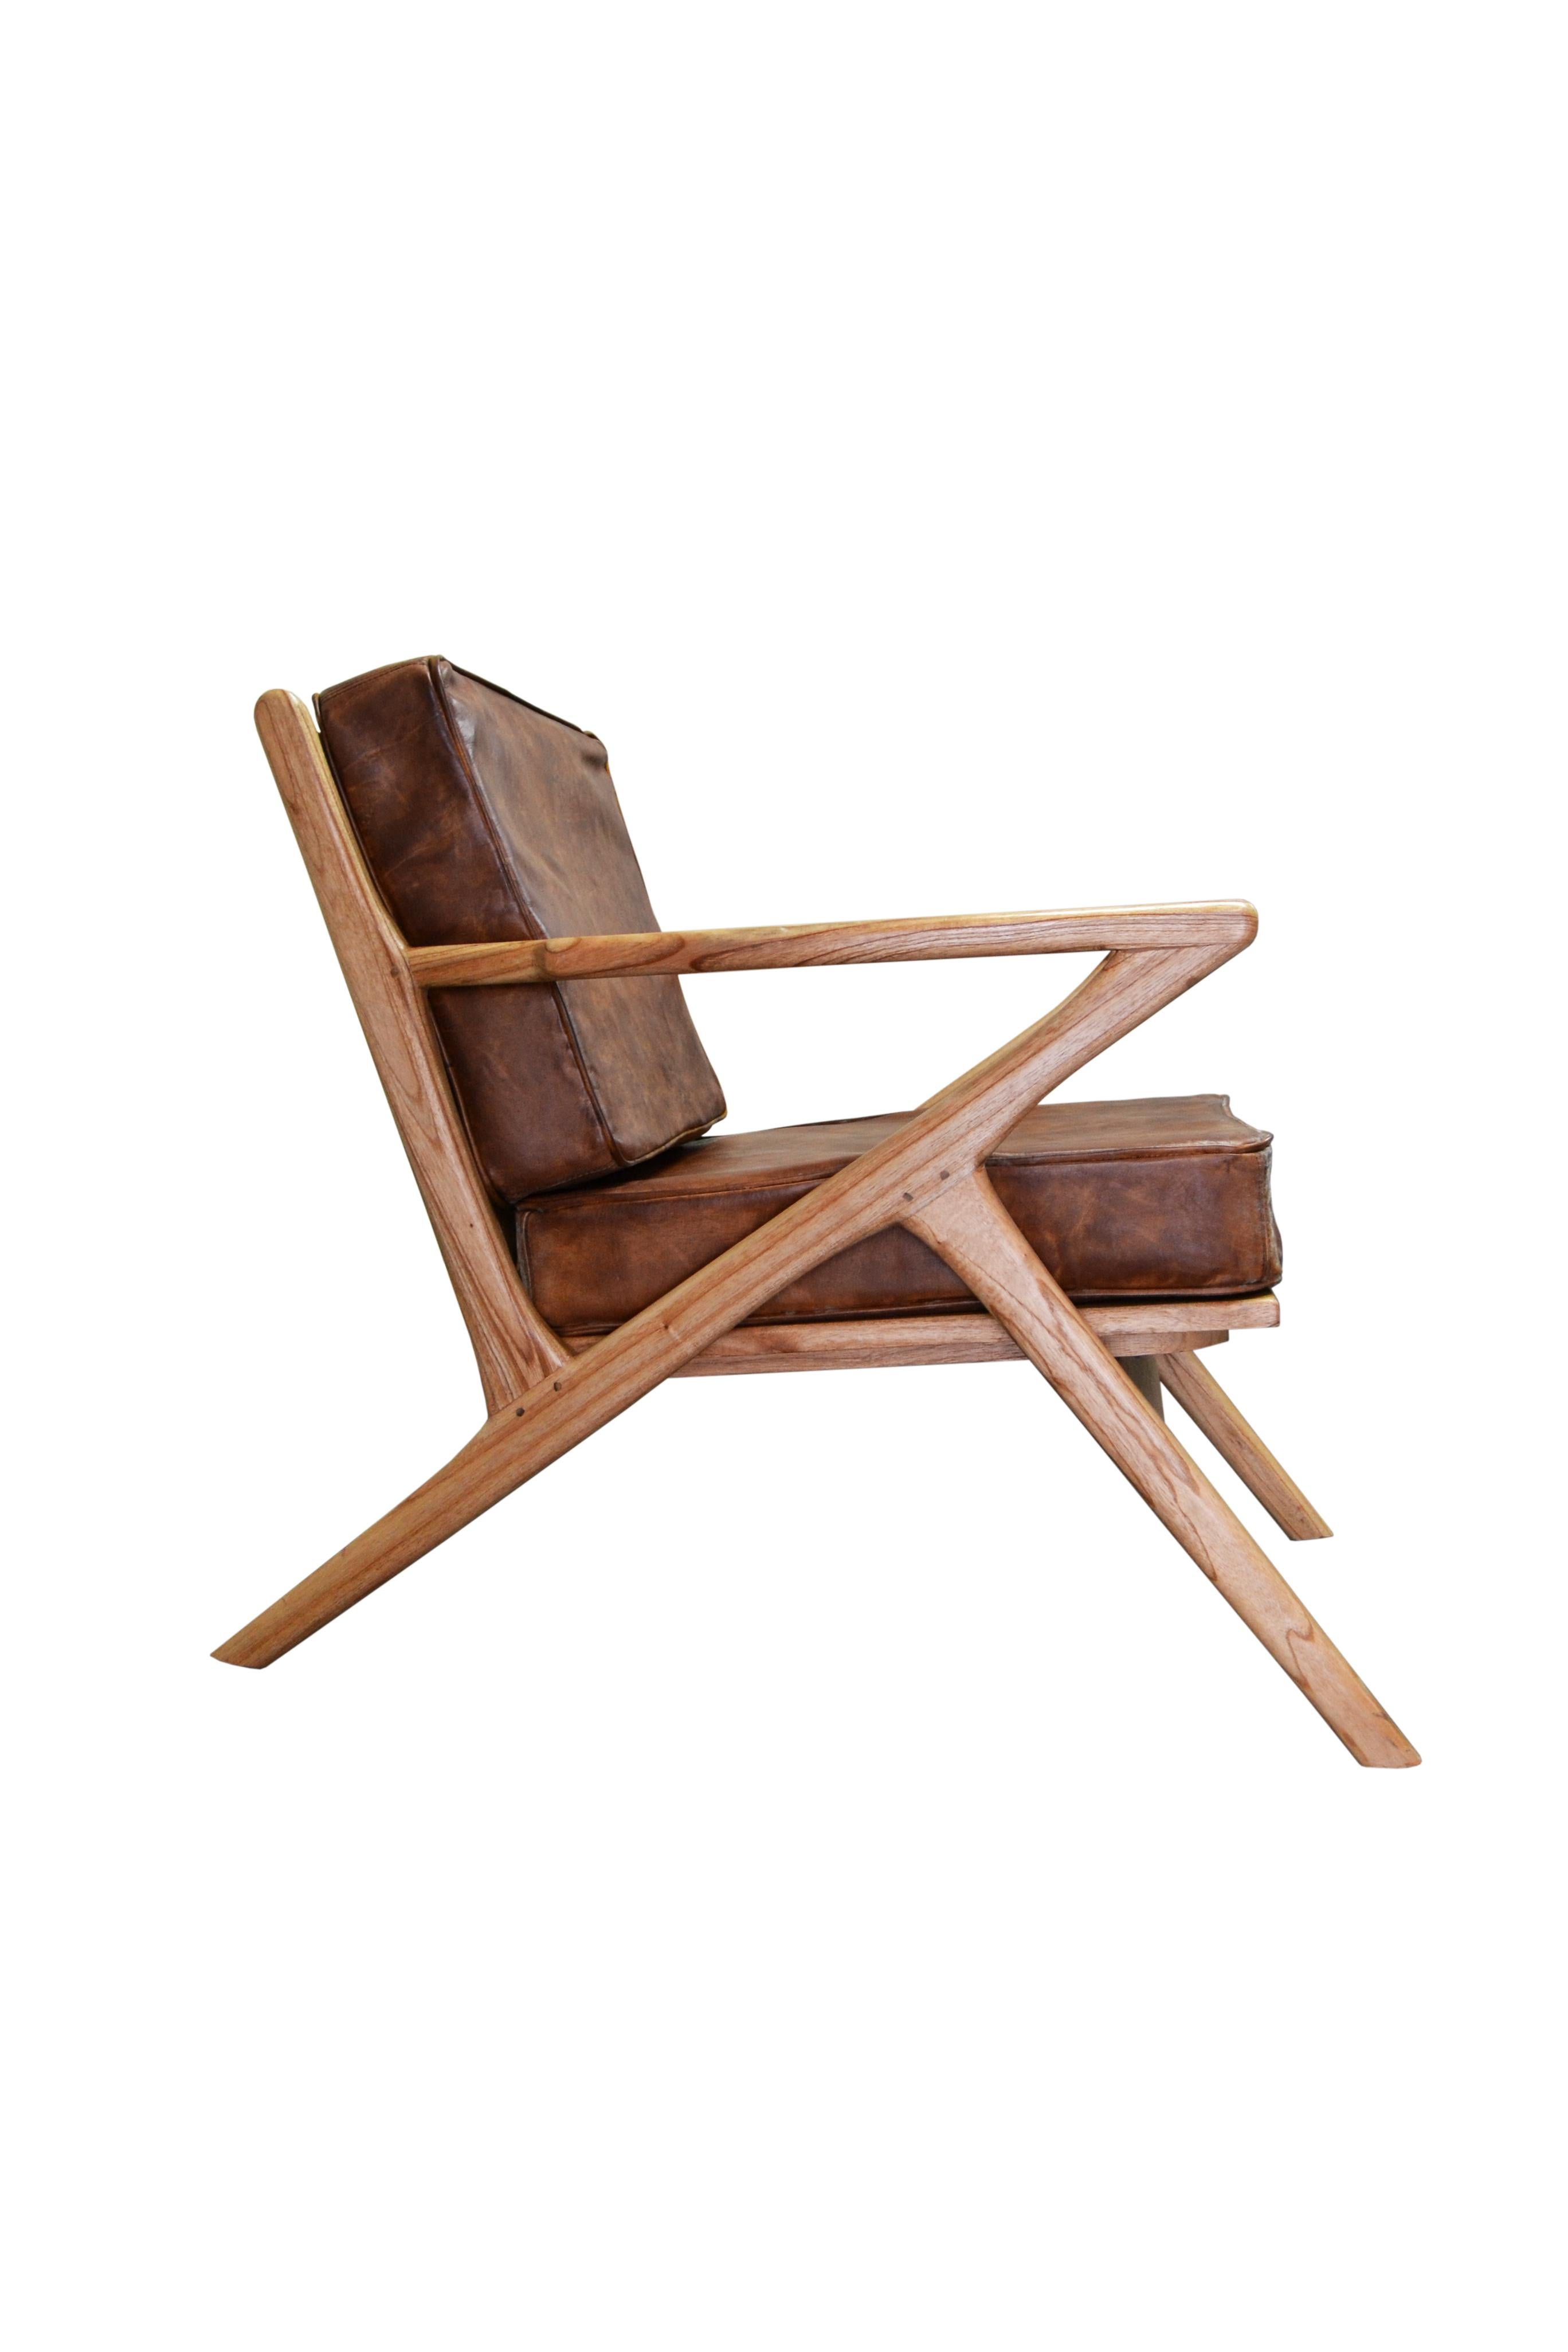 Neuer Bugholzsessel mit Sitz und Rückenlehne aus Holz und braunen Hautkissen
Ideal für das Gastgewerbe

Maße: Armhöhe 23,62 Zoll.